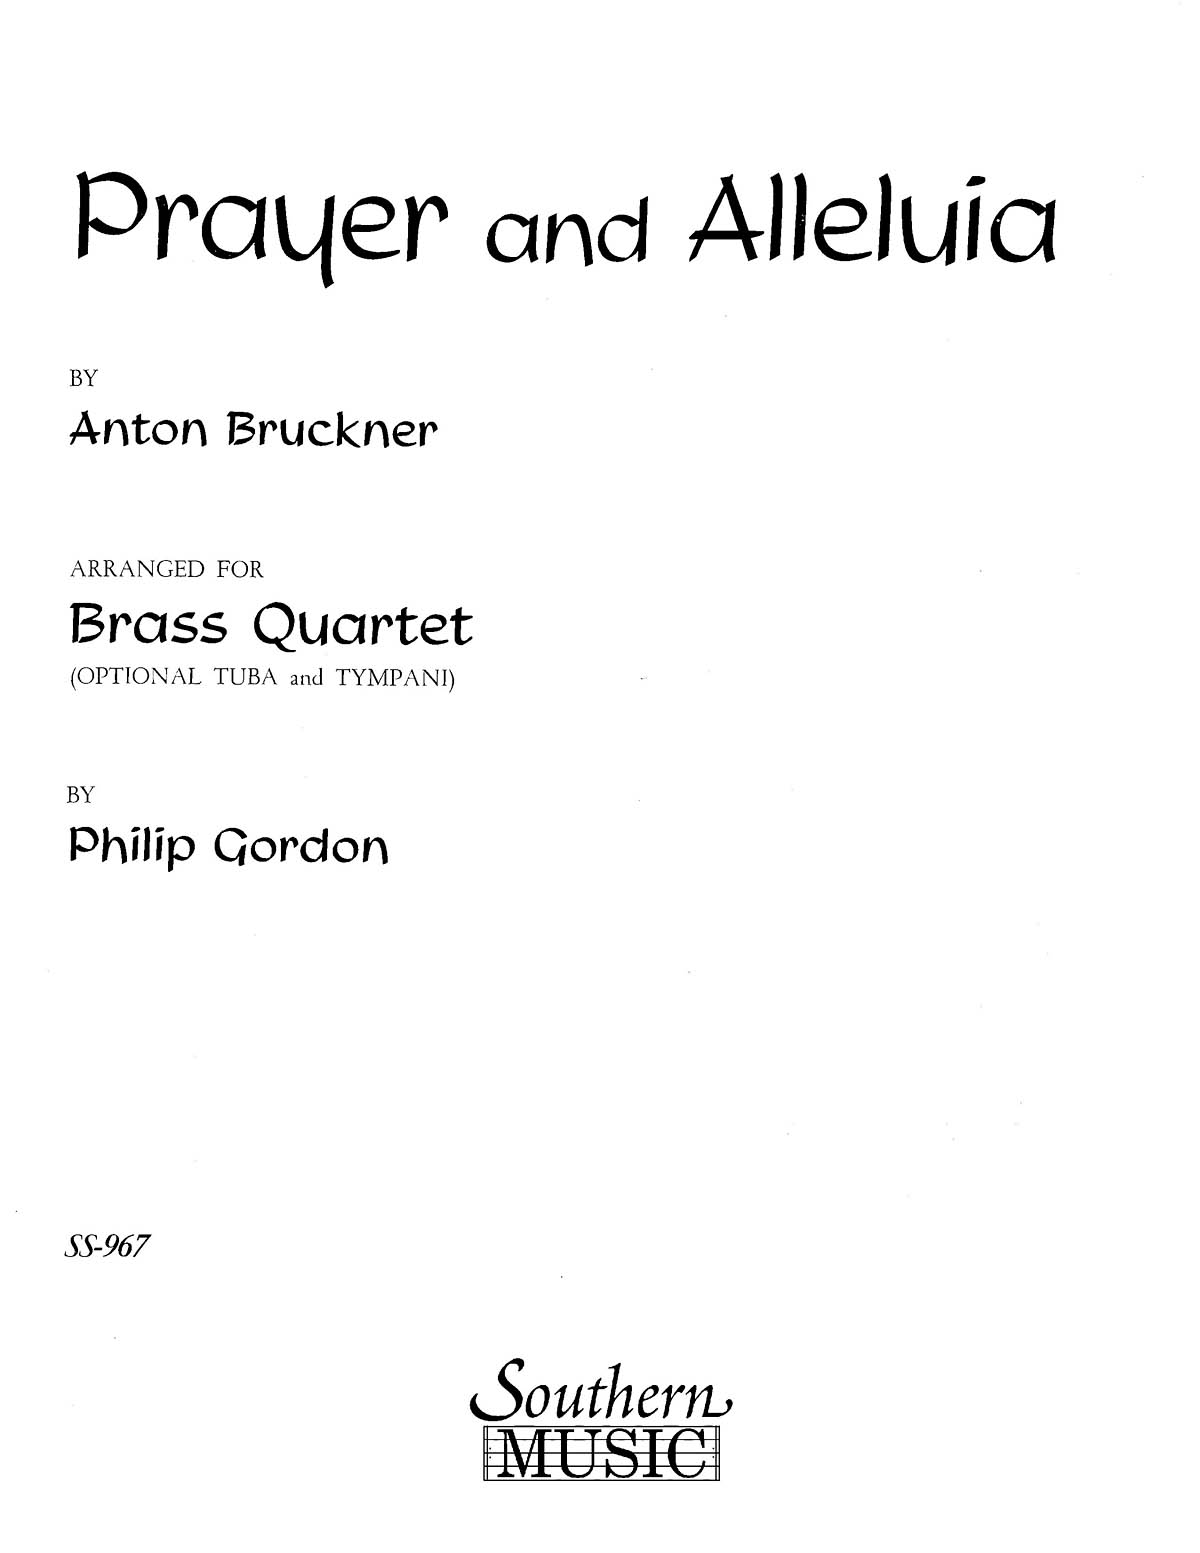 Anton Bruckner: Prayer and Alleluia: Brass Ensemble: Part